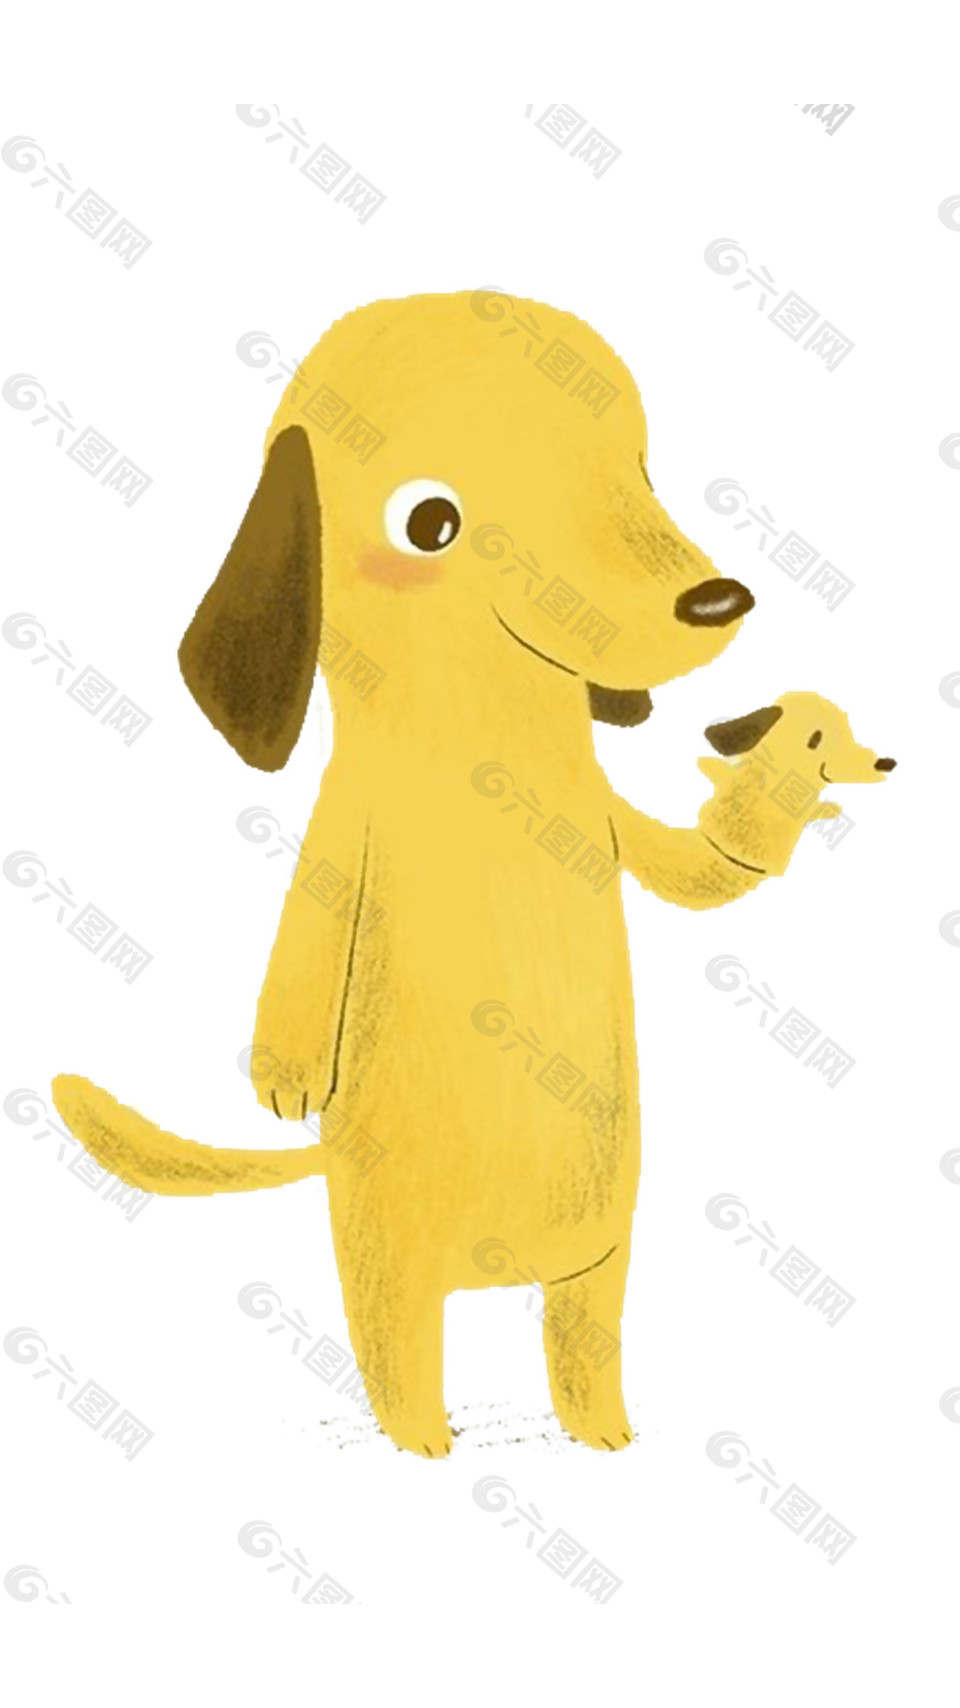 可爱淡黄色小狗卡通手绘装饰艺术